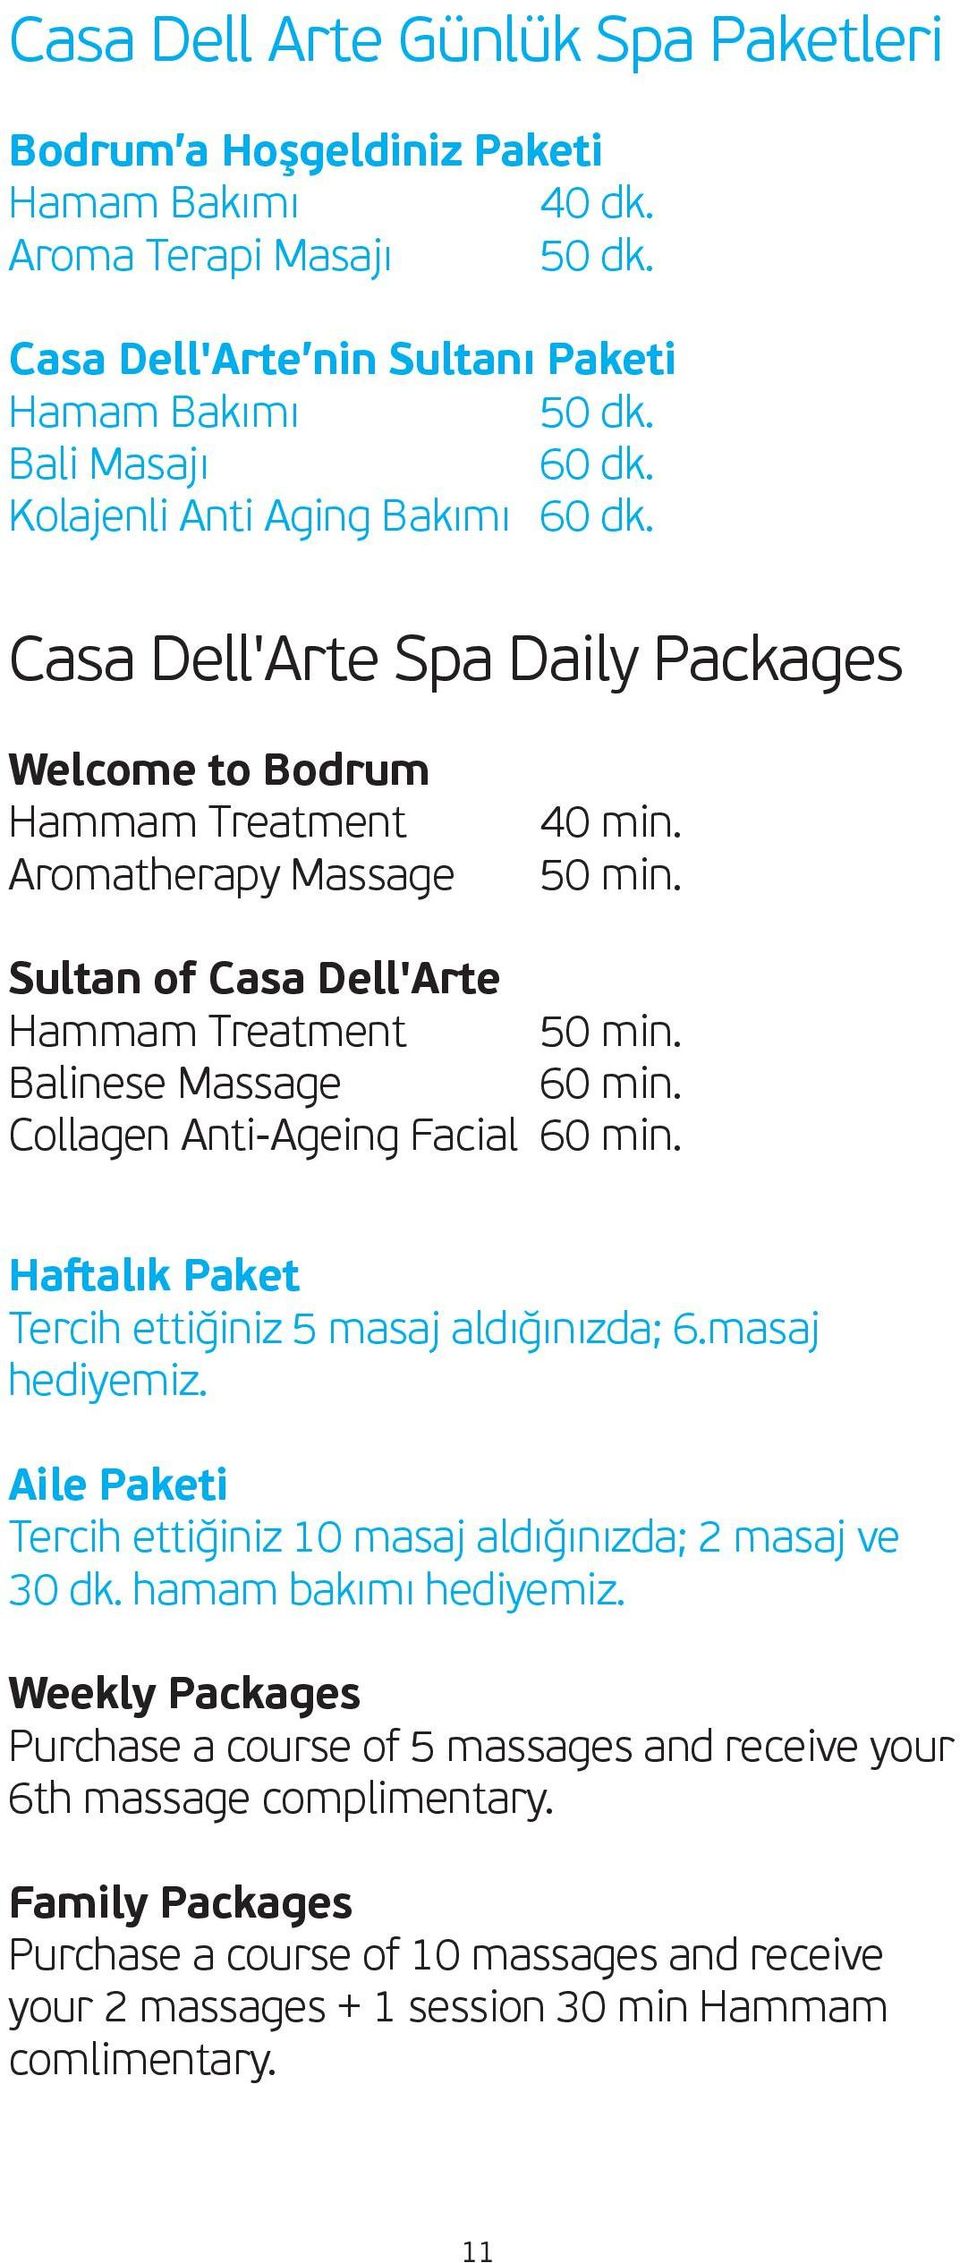 Balinese Massage 60 min. Collagen Anti-Ageing Facial 60 min. Haſtalık Paket Tercih ettiğiniz 5 masaj aldığınızda; 6.masaj hediyemiz.